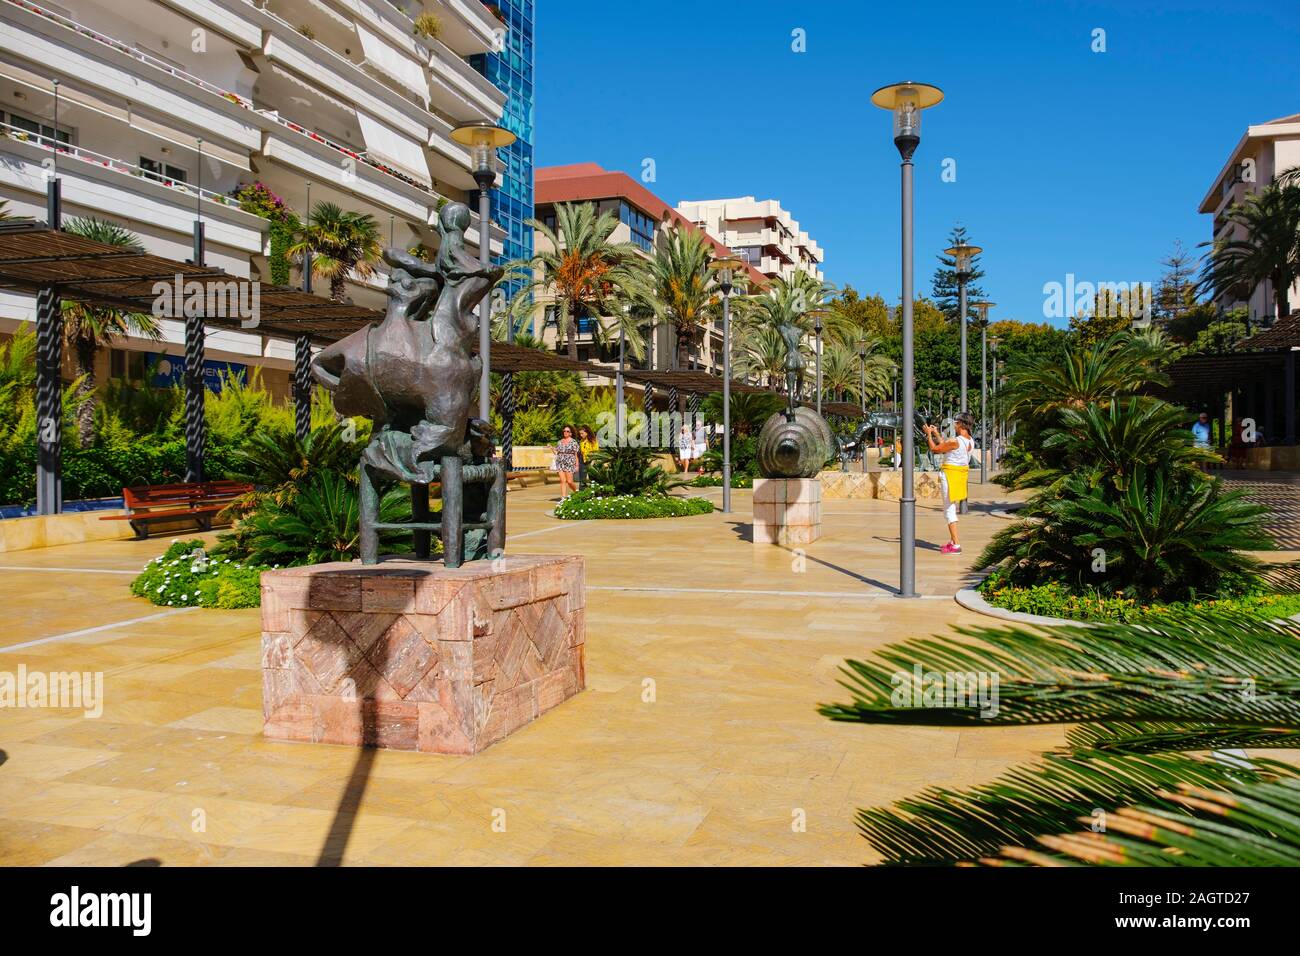 Dali modern art sculpture, Avenida del Mar Marbella. Malaga province Costa del Sol. Andalusia Southern Spain, Europe Stock Photo